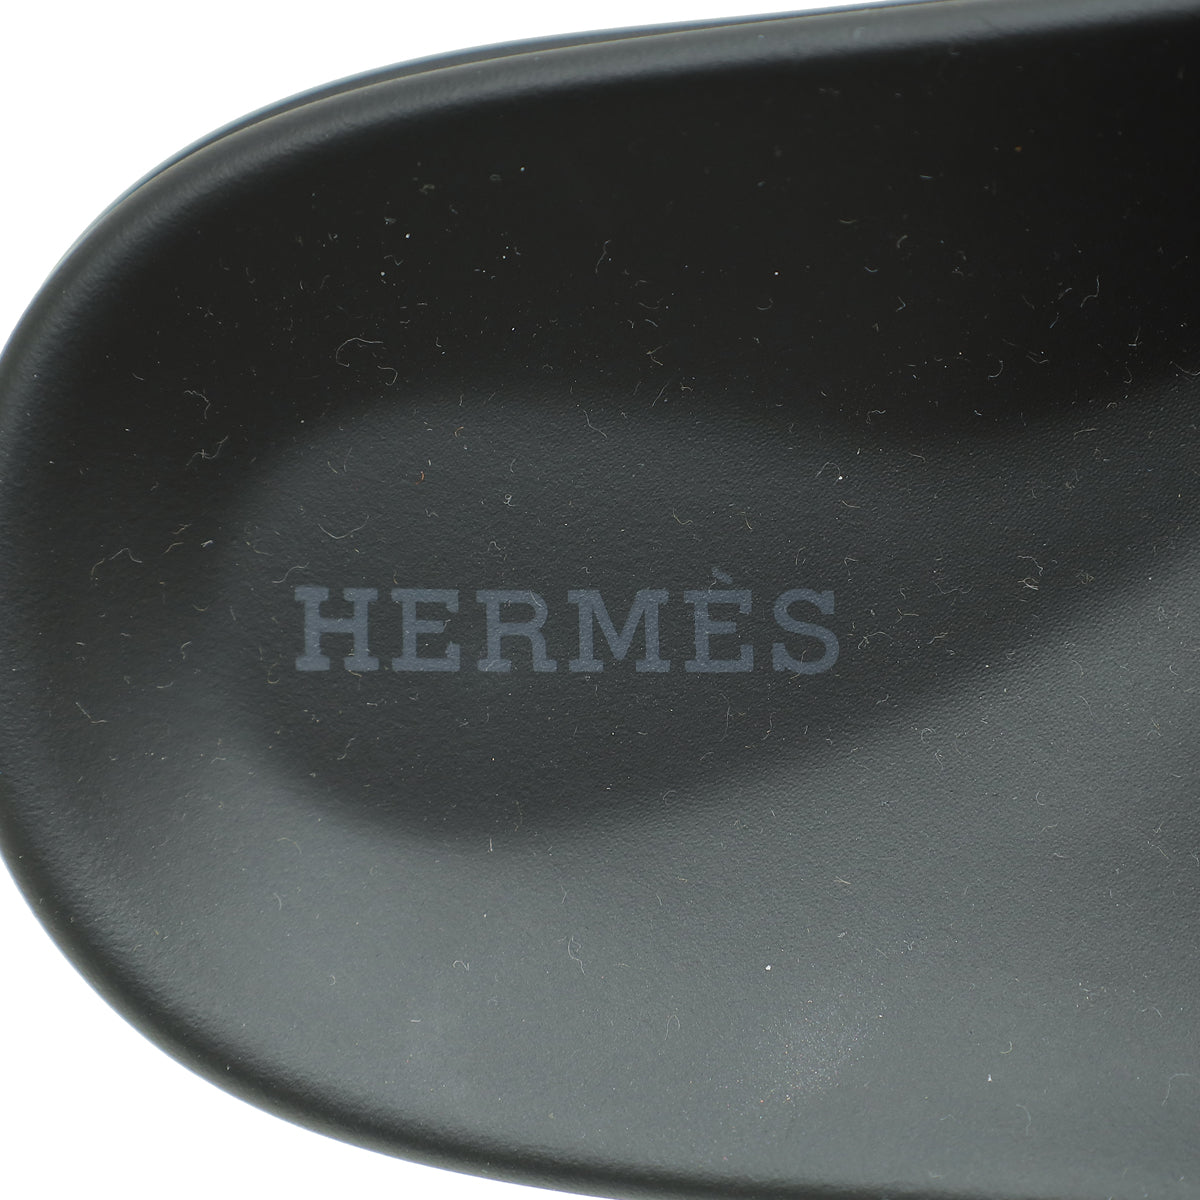 Hermes Bicolor Chypre Sandal 38